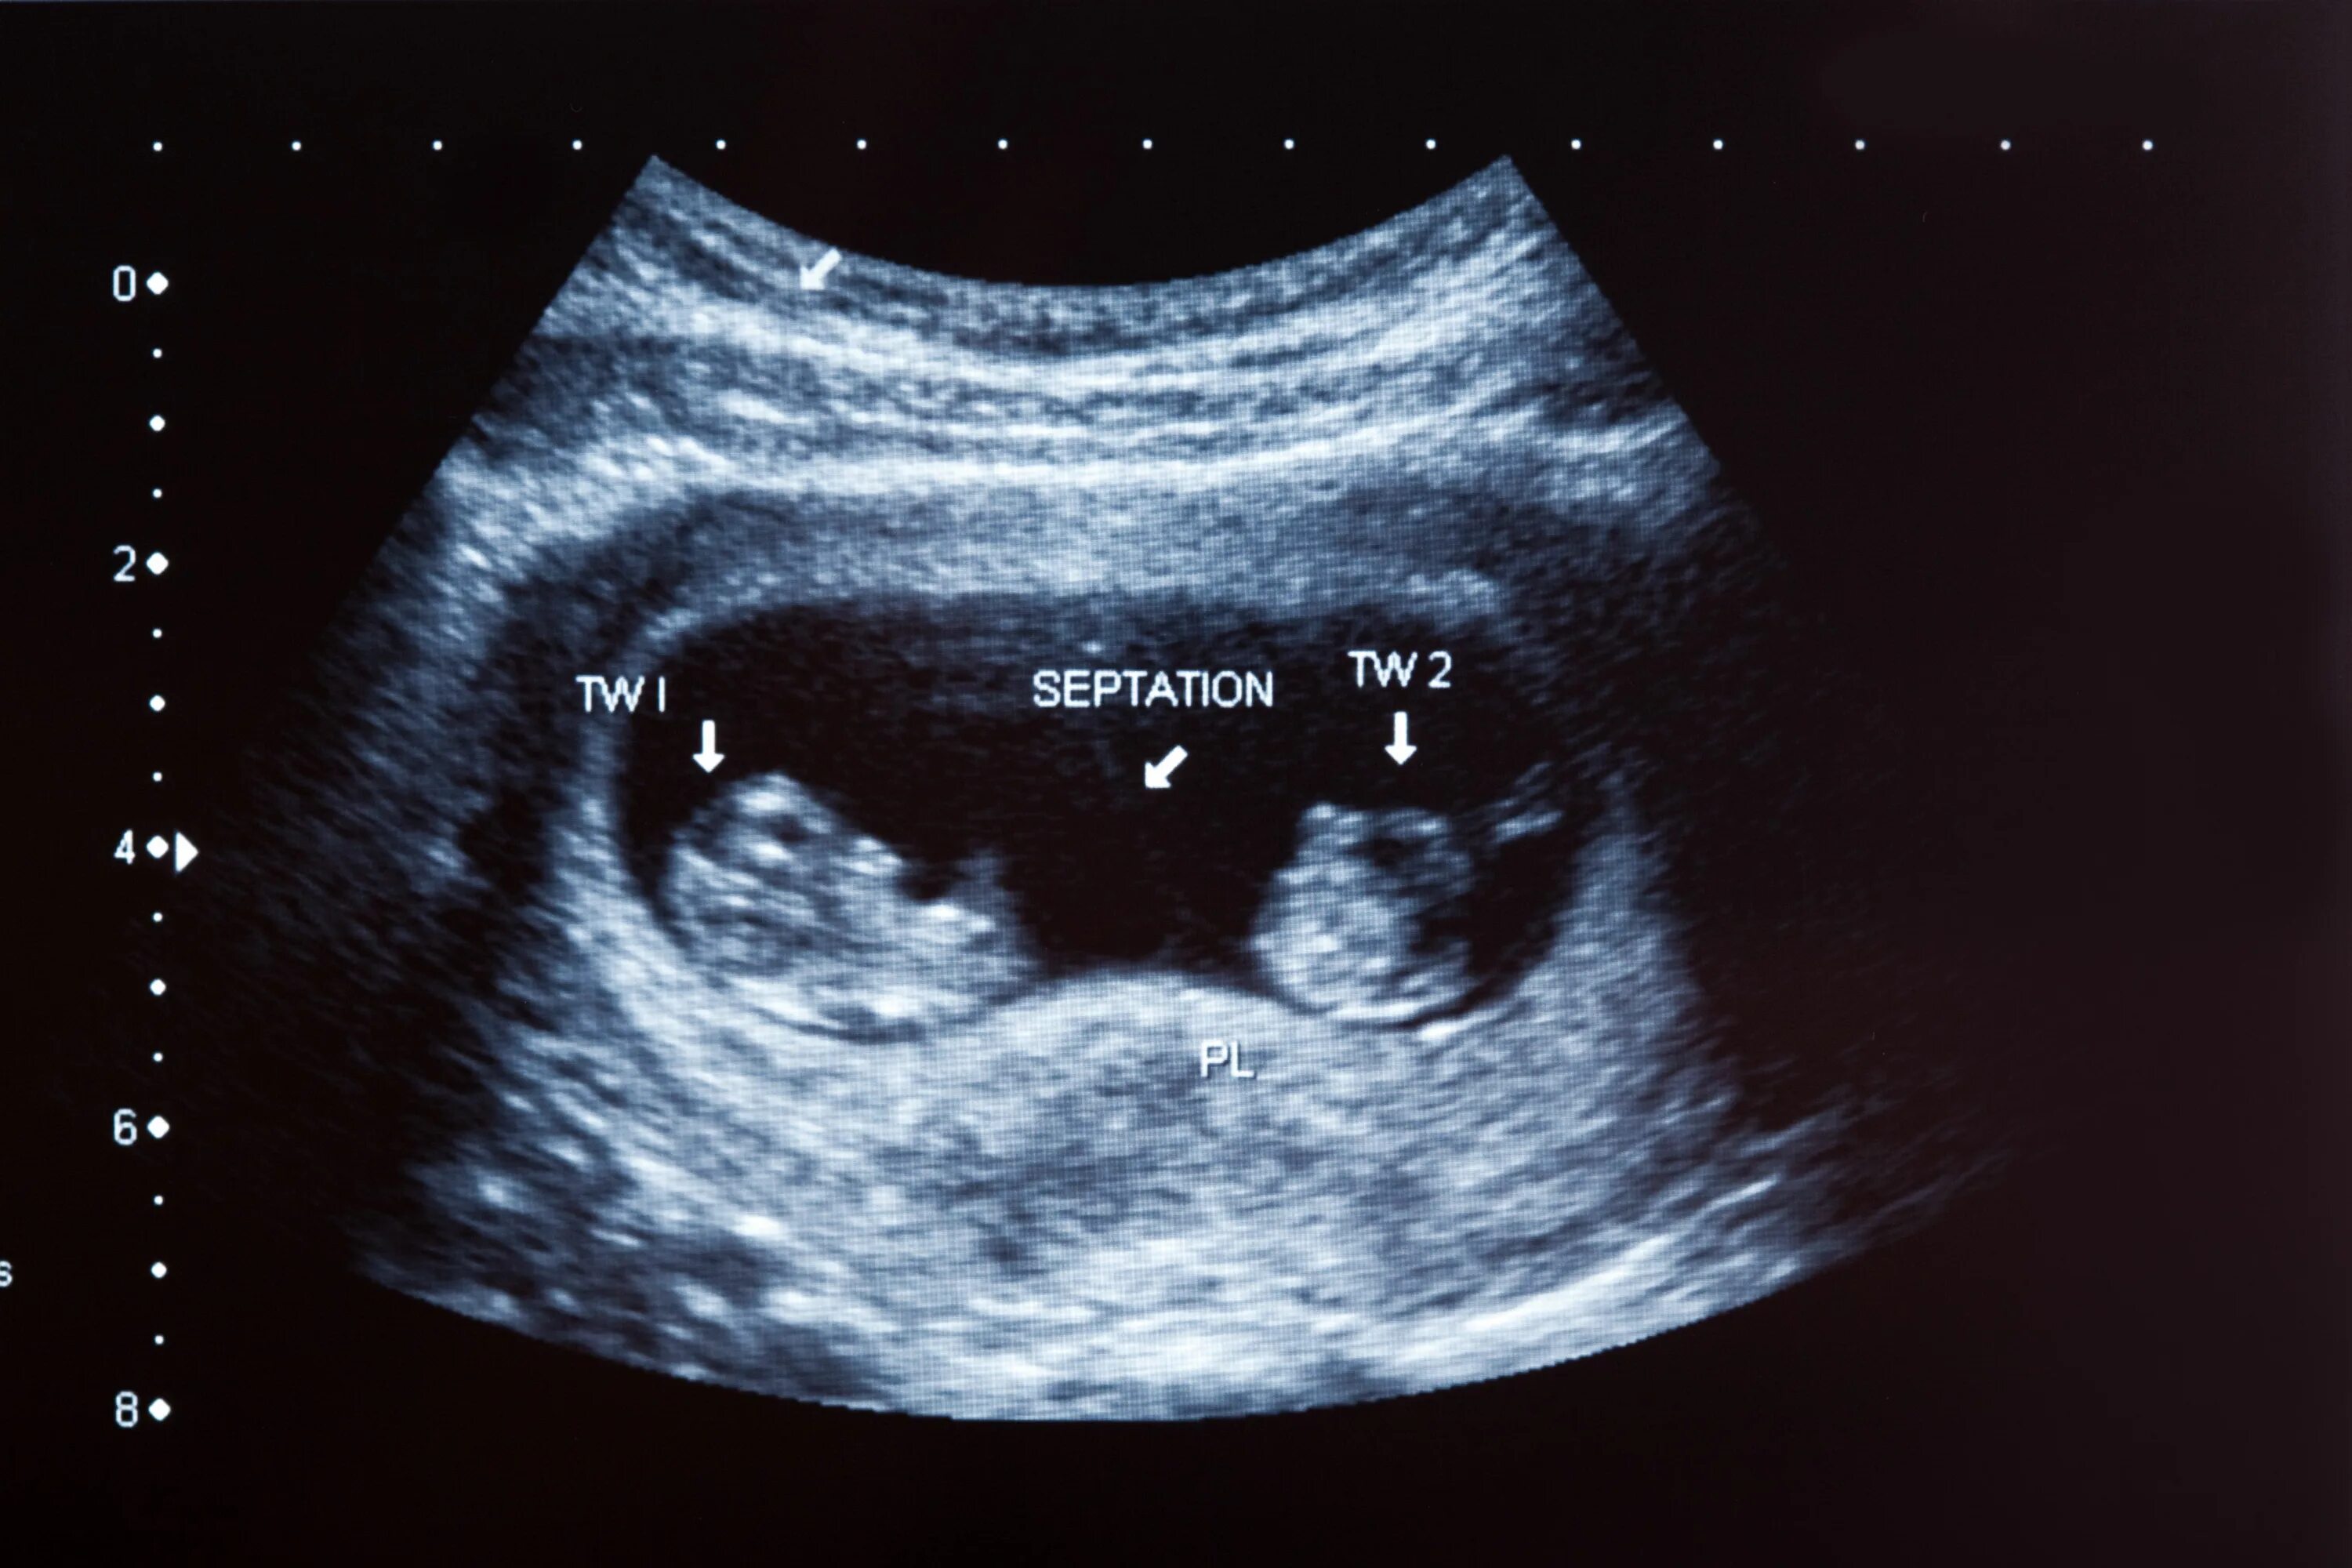 УЗИ 12 недель беременности двойня. УЗИ 10 недель беременности двойня. УЗИ 8 недель беременности двойня. УЗИ 20 недель беременности многоплодная беременность. Большие девочки 8 неделя